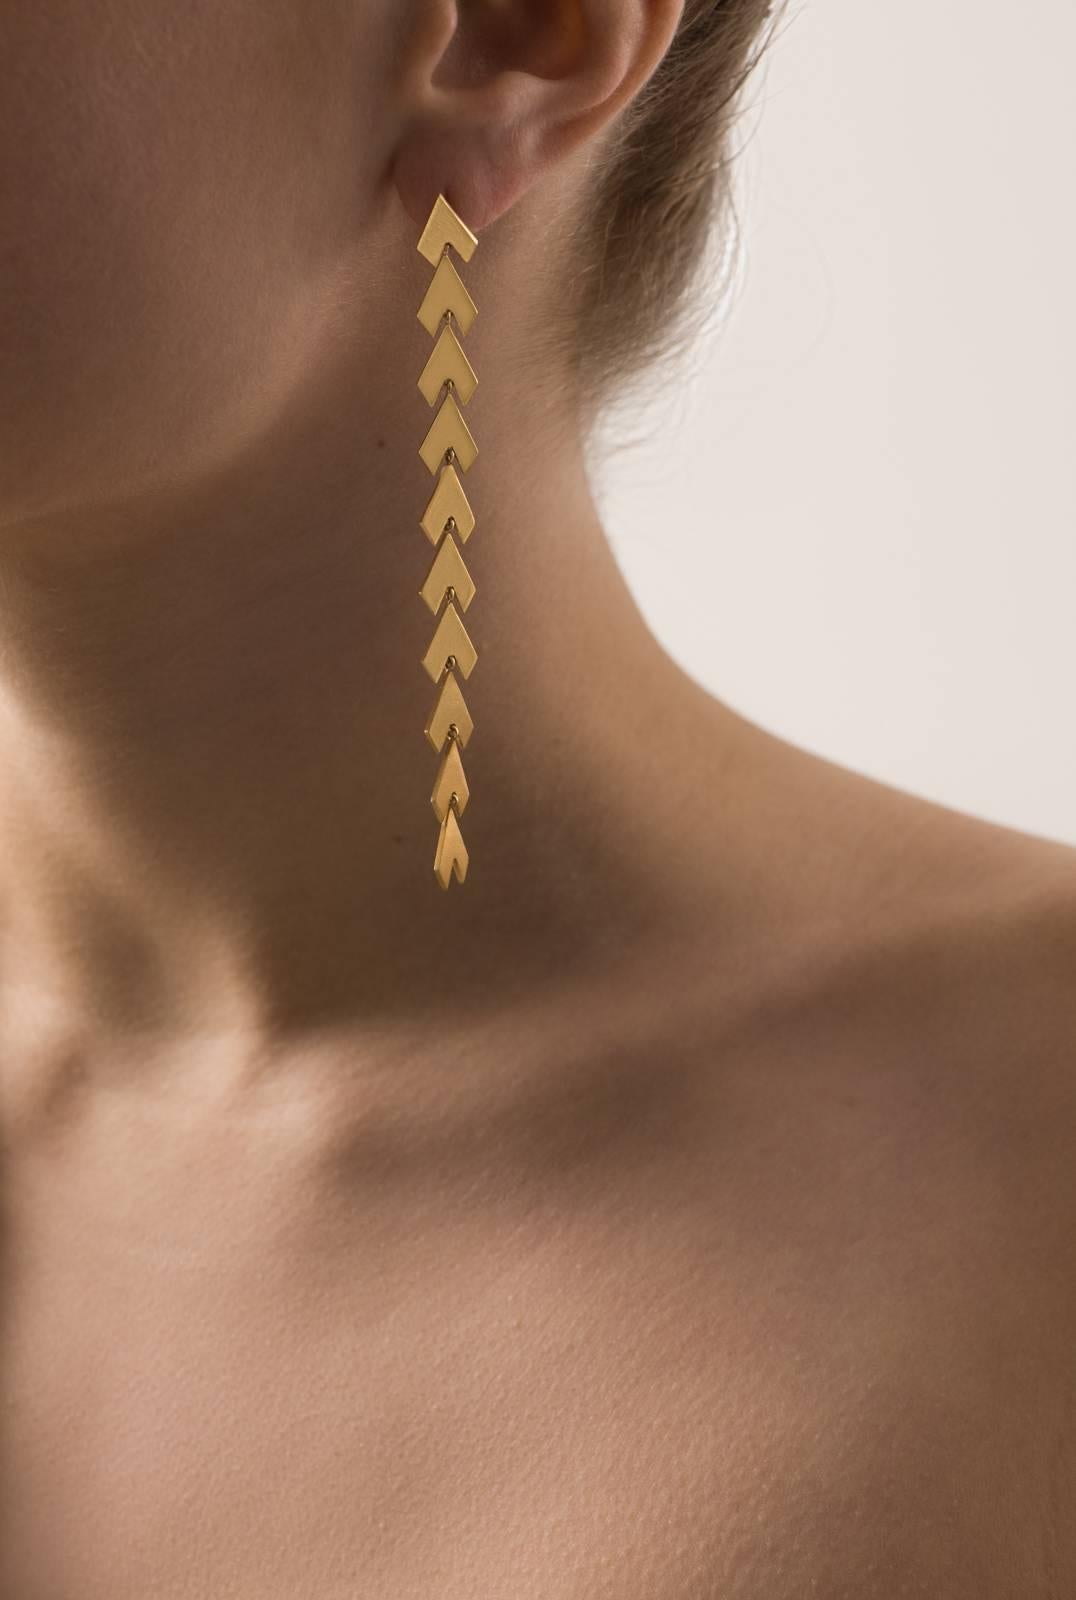 Women's Earrings Timeless Long  Drop 18k Gold-Plated Sterling Silver Arrow Shaped Greek  For Sale